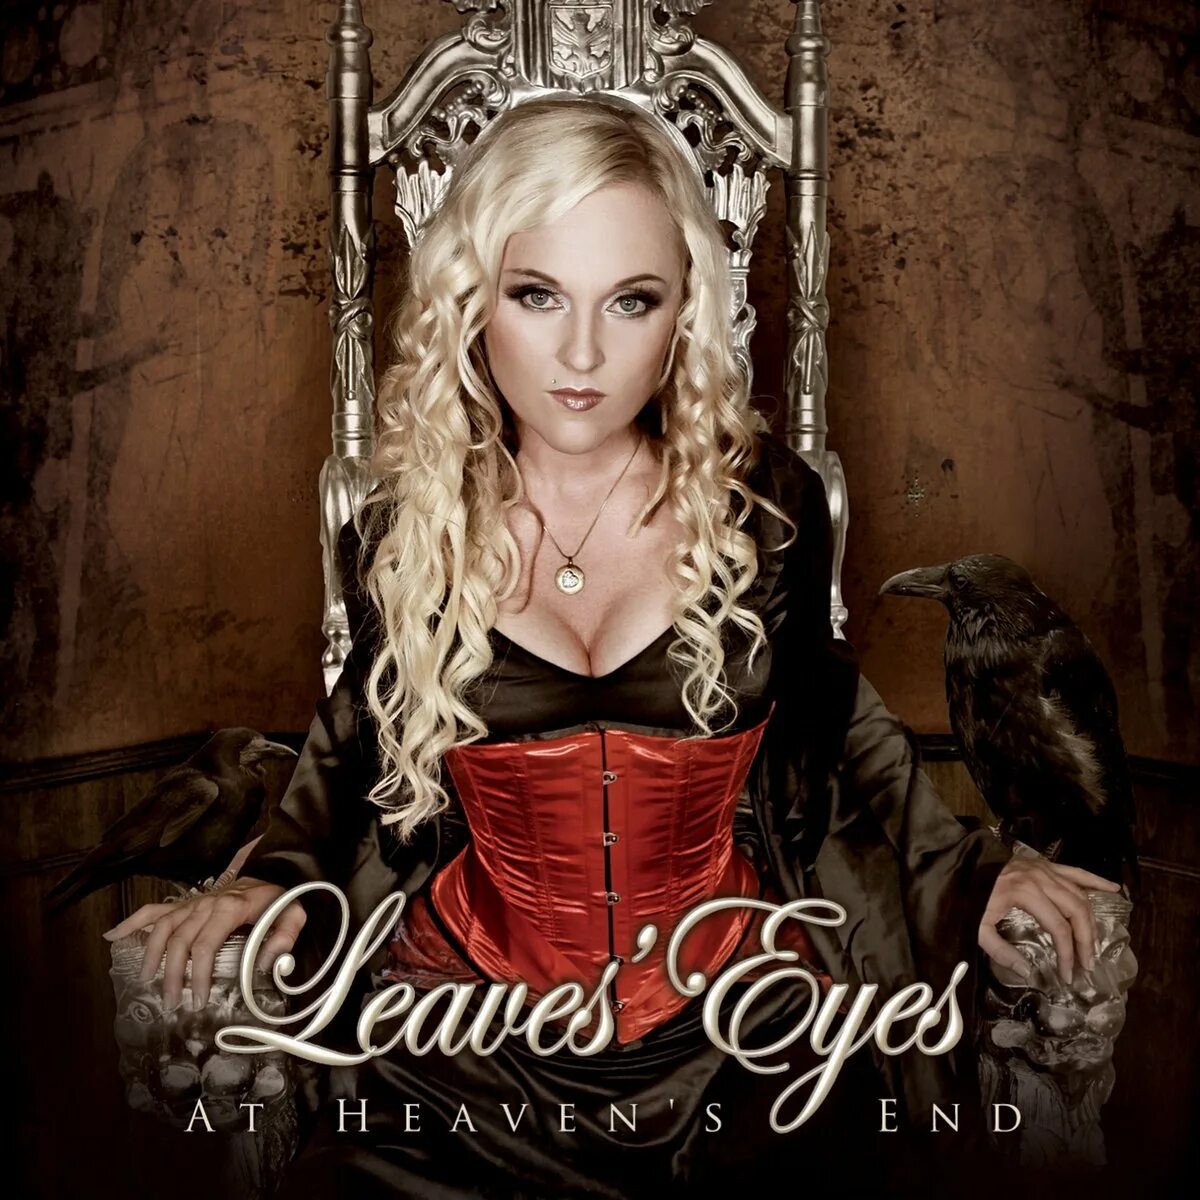 Leaves eyes myths of fate. Группа leaves’ Eyes. Leaves' Eyes - Njord (2009). Leaves Eyes вокалистка. Leaves' Eyes альбомы.